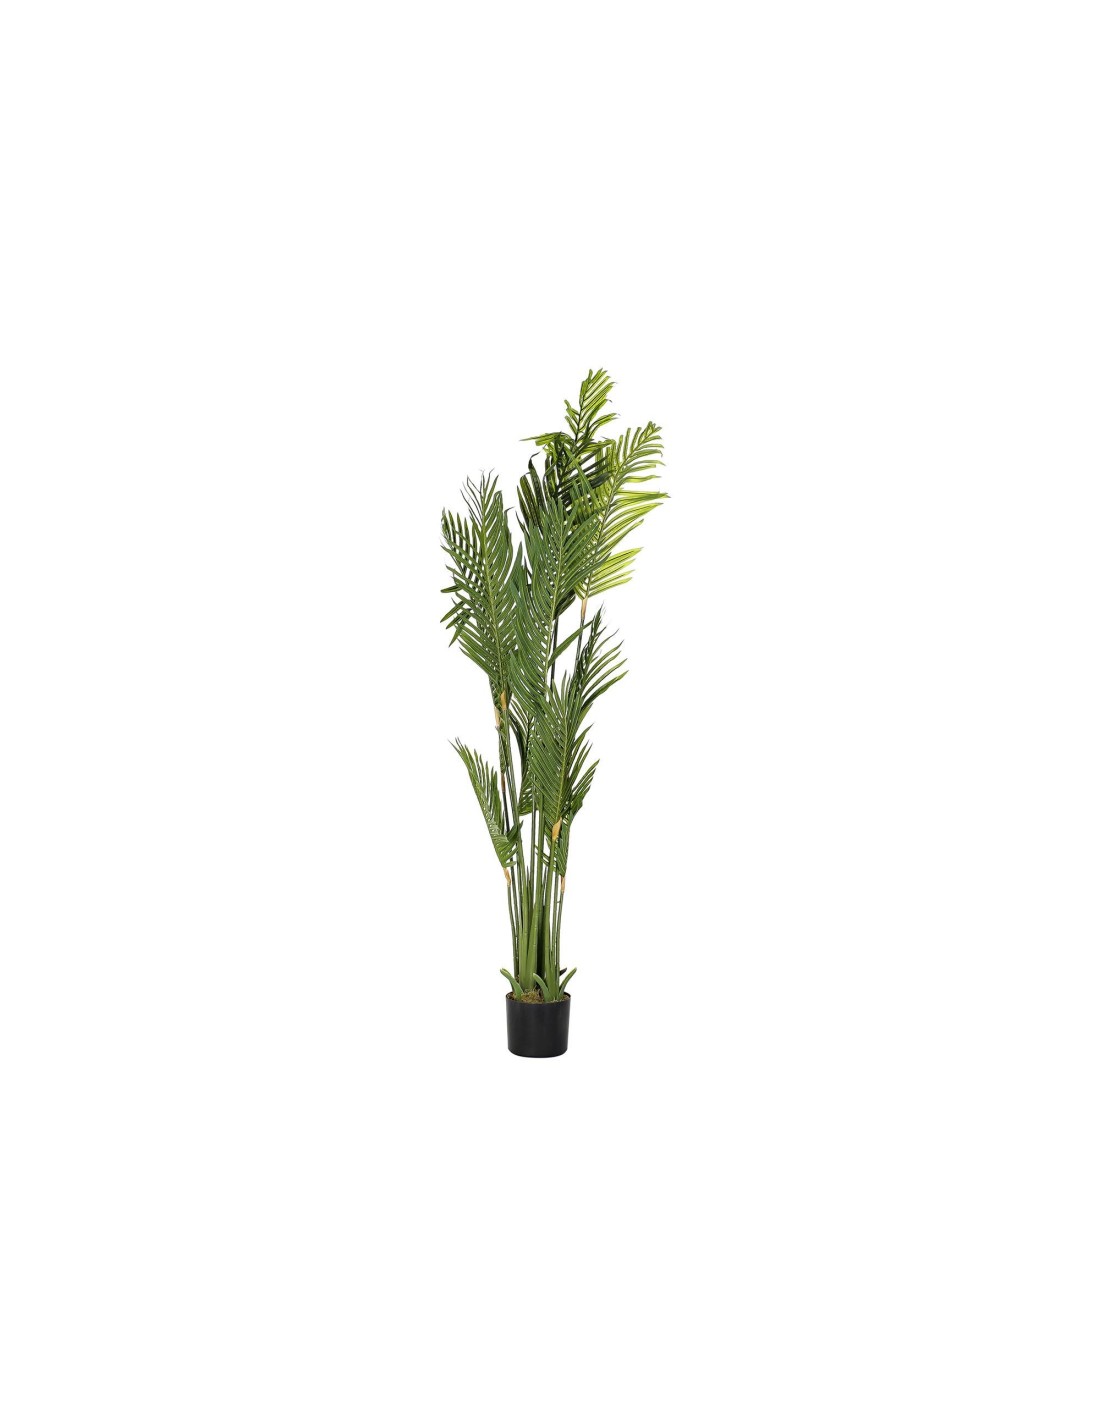 Planta artificial de decoración Palmera Deluxe de la marca Decoplanta